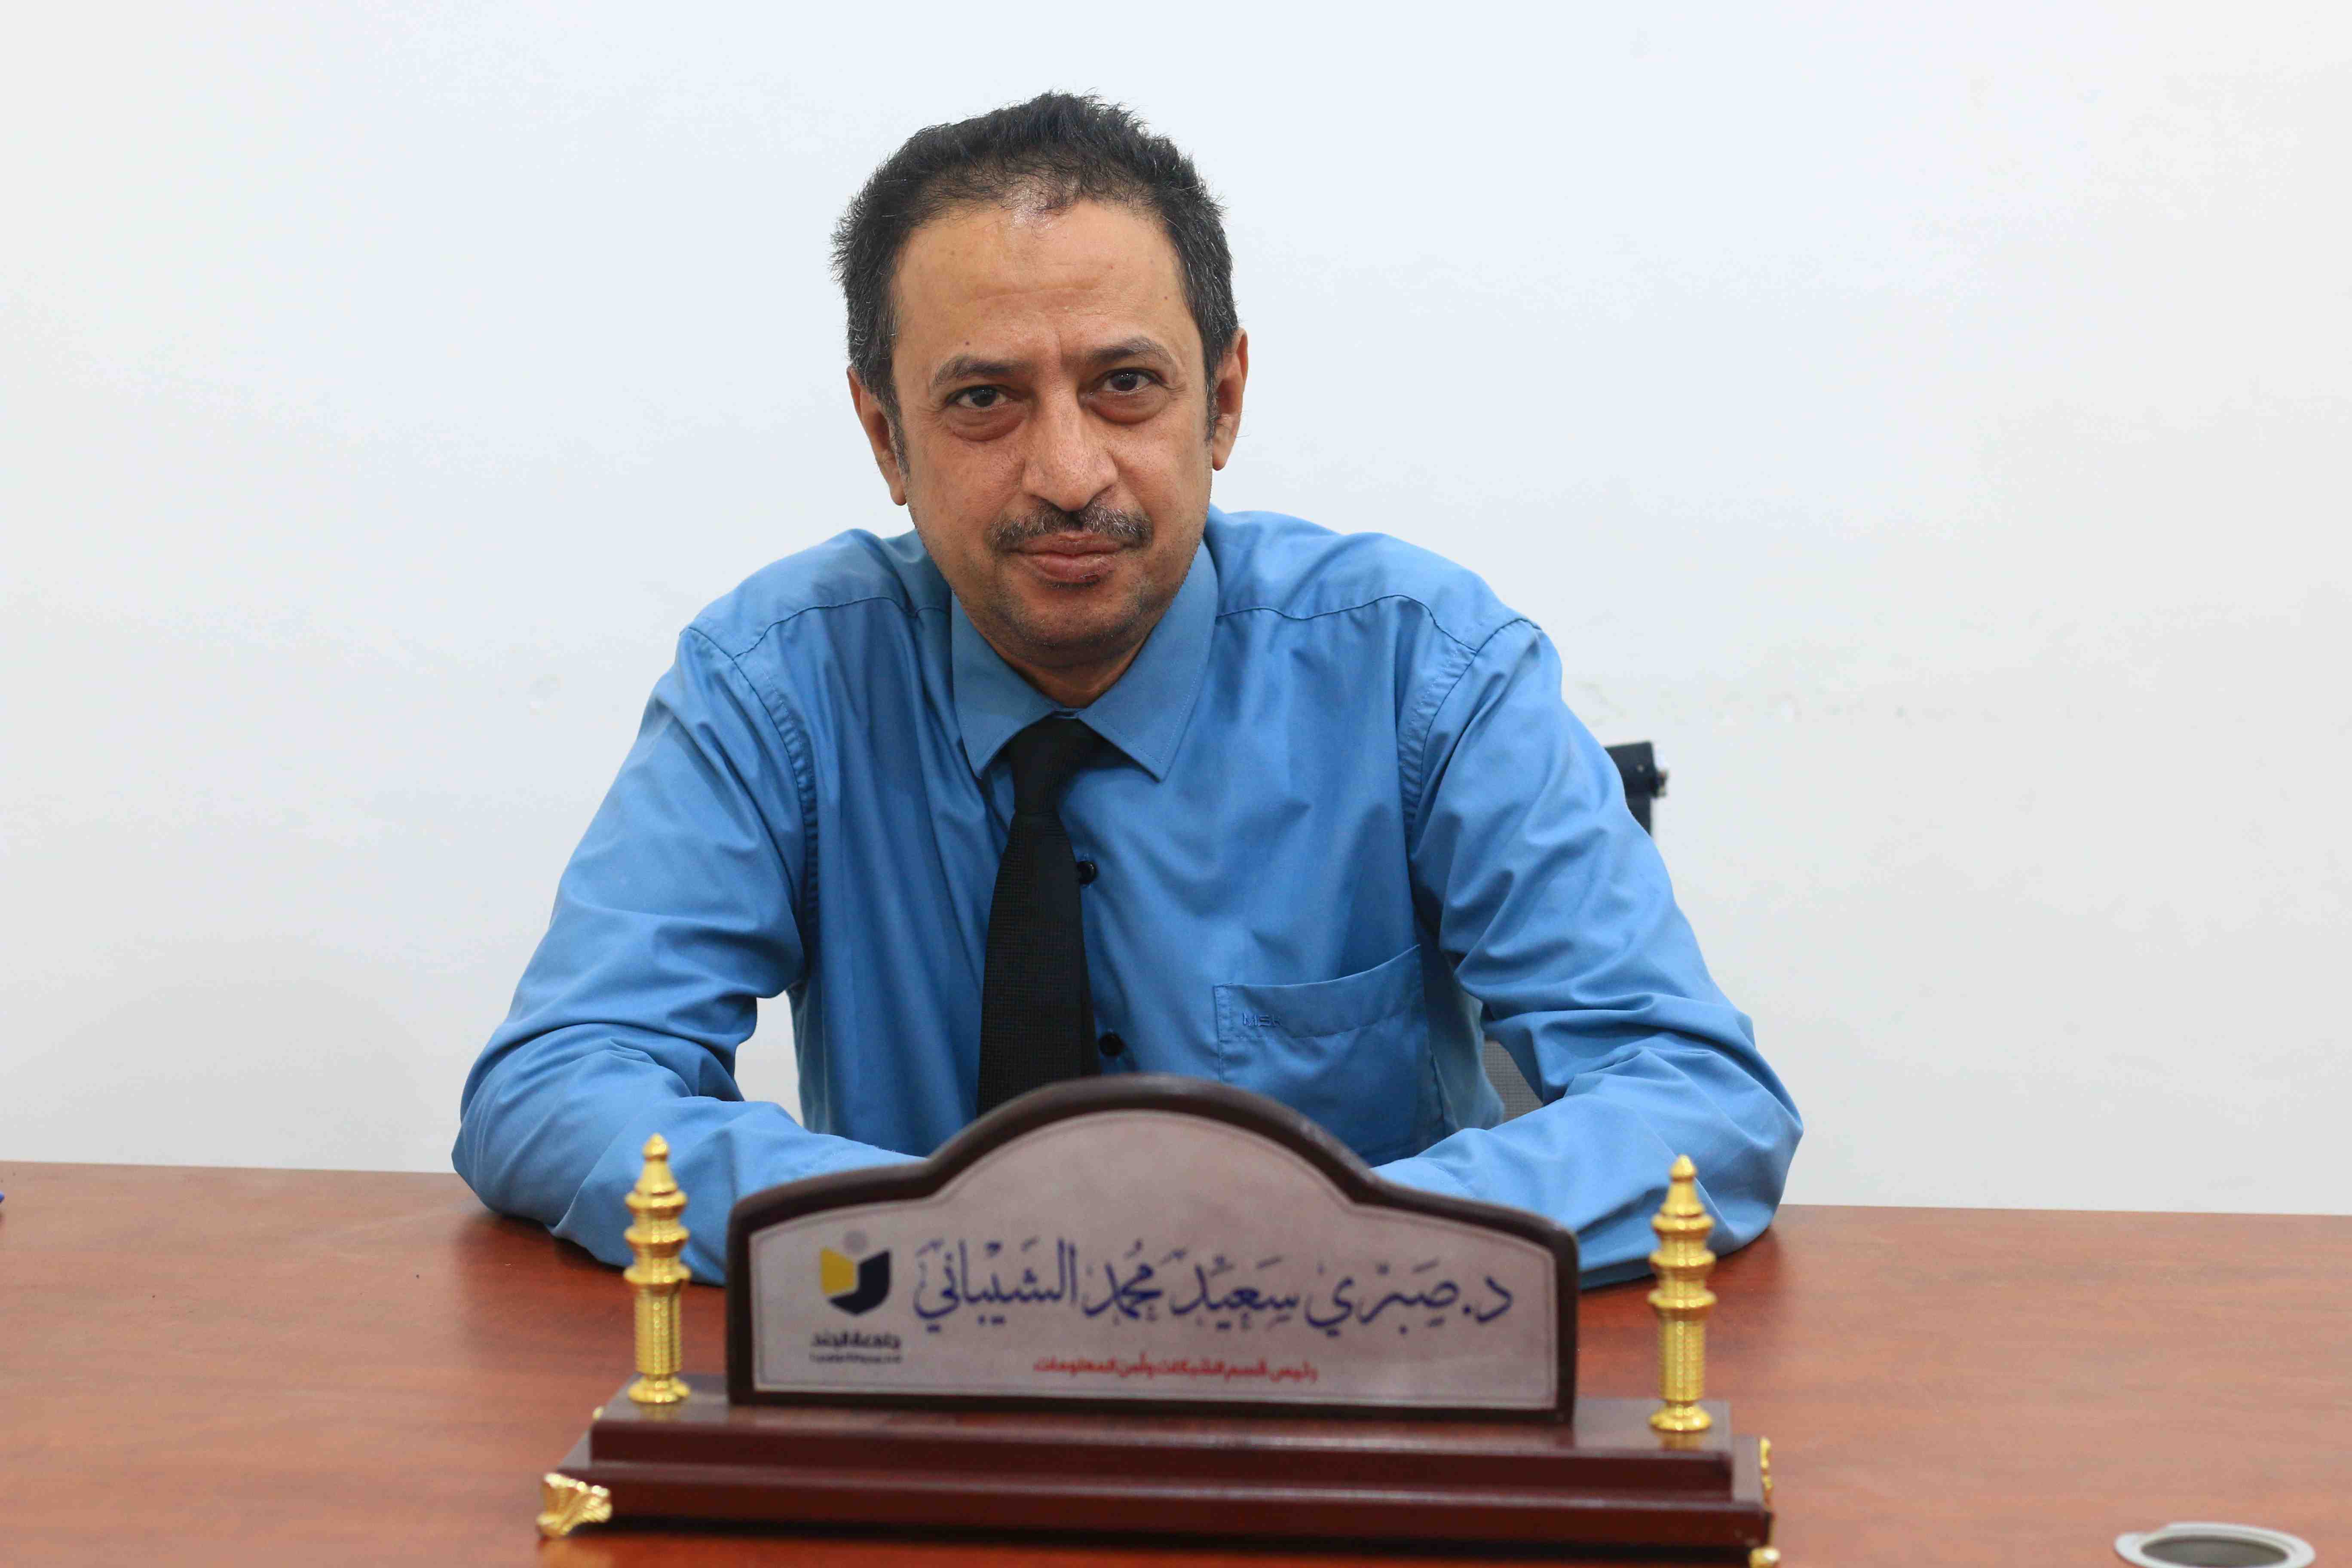 Dr. Sabri Saeed Alshaibani